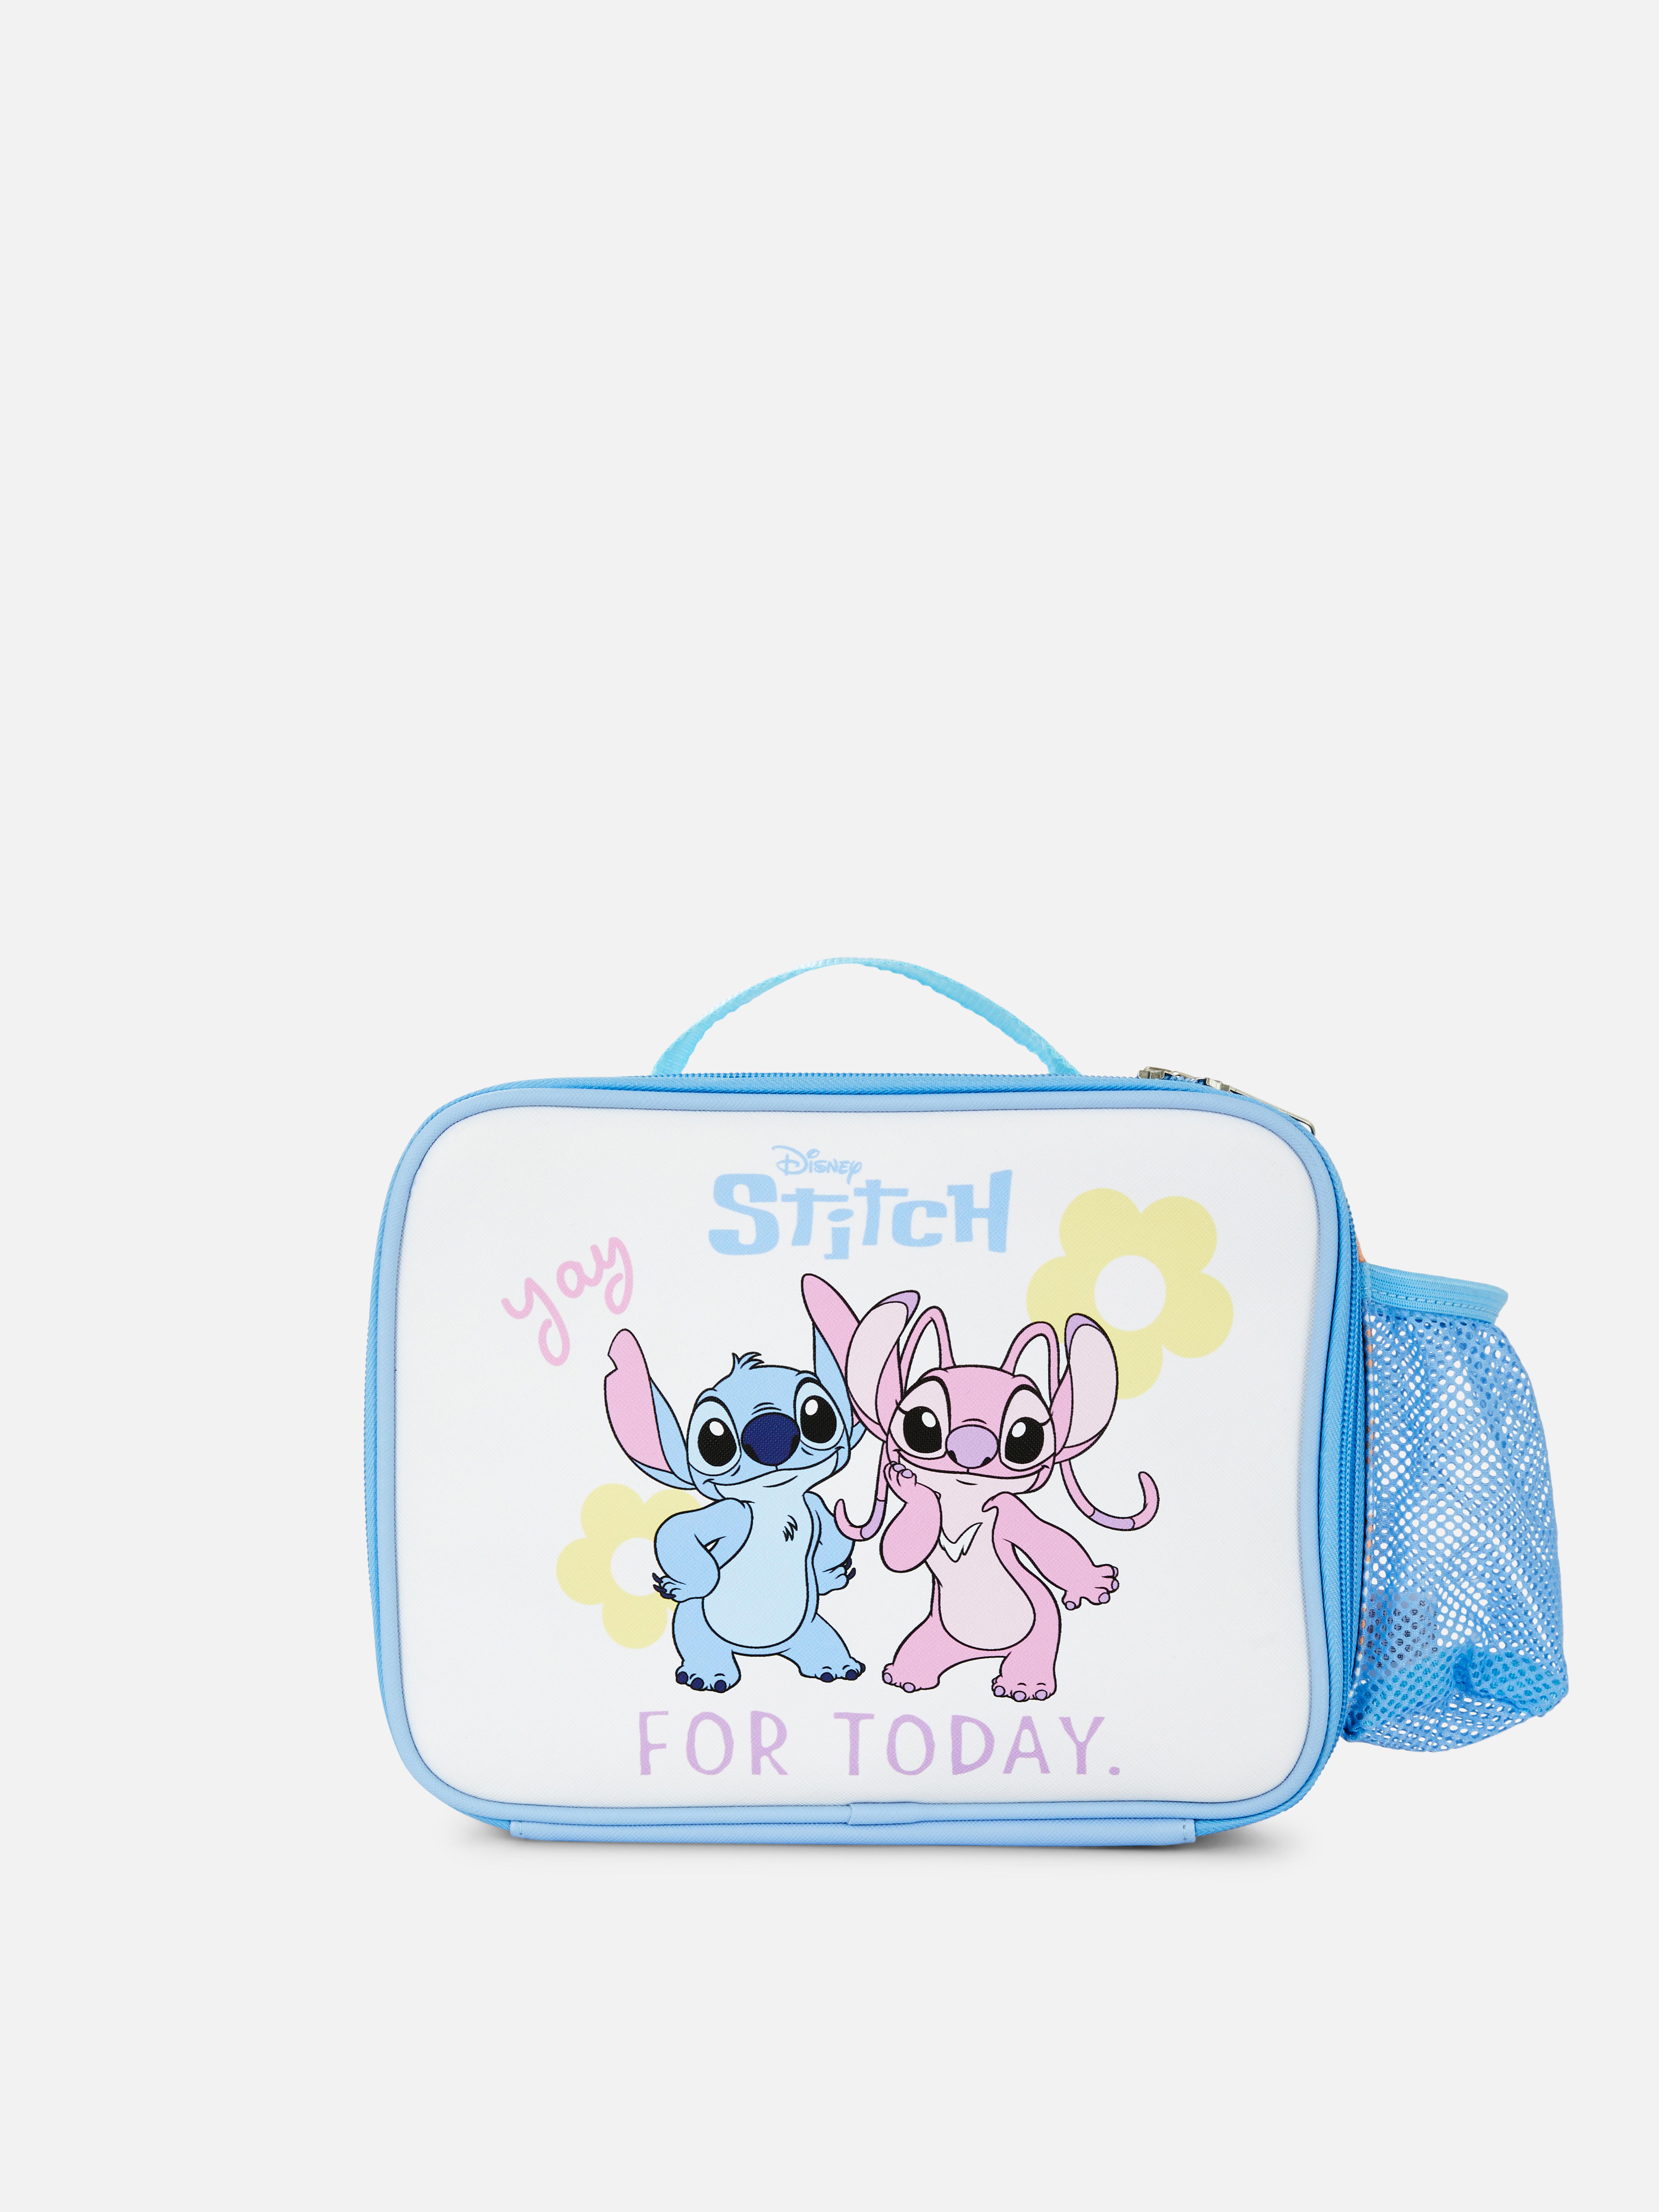 Disney's Lilo & Stitch Lunchbox